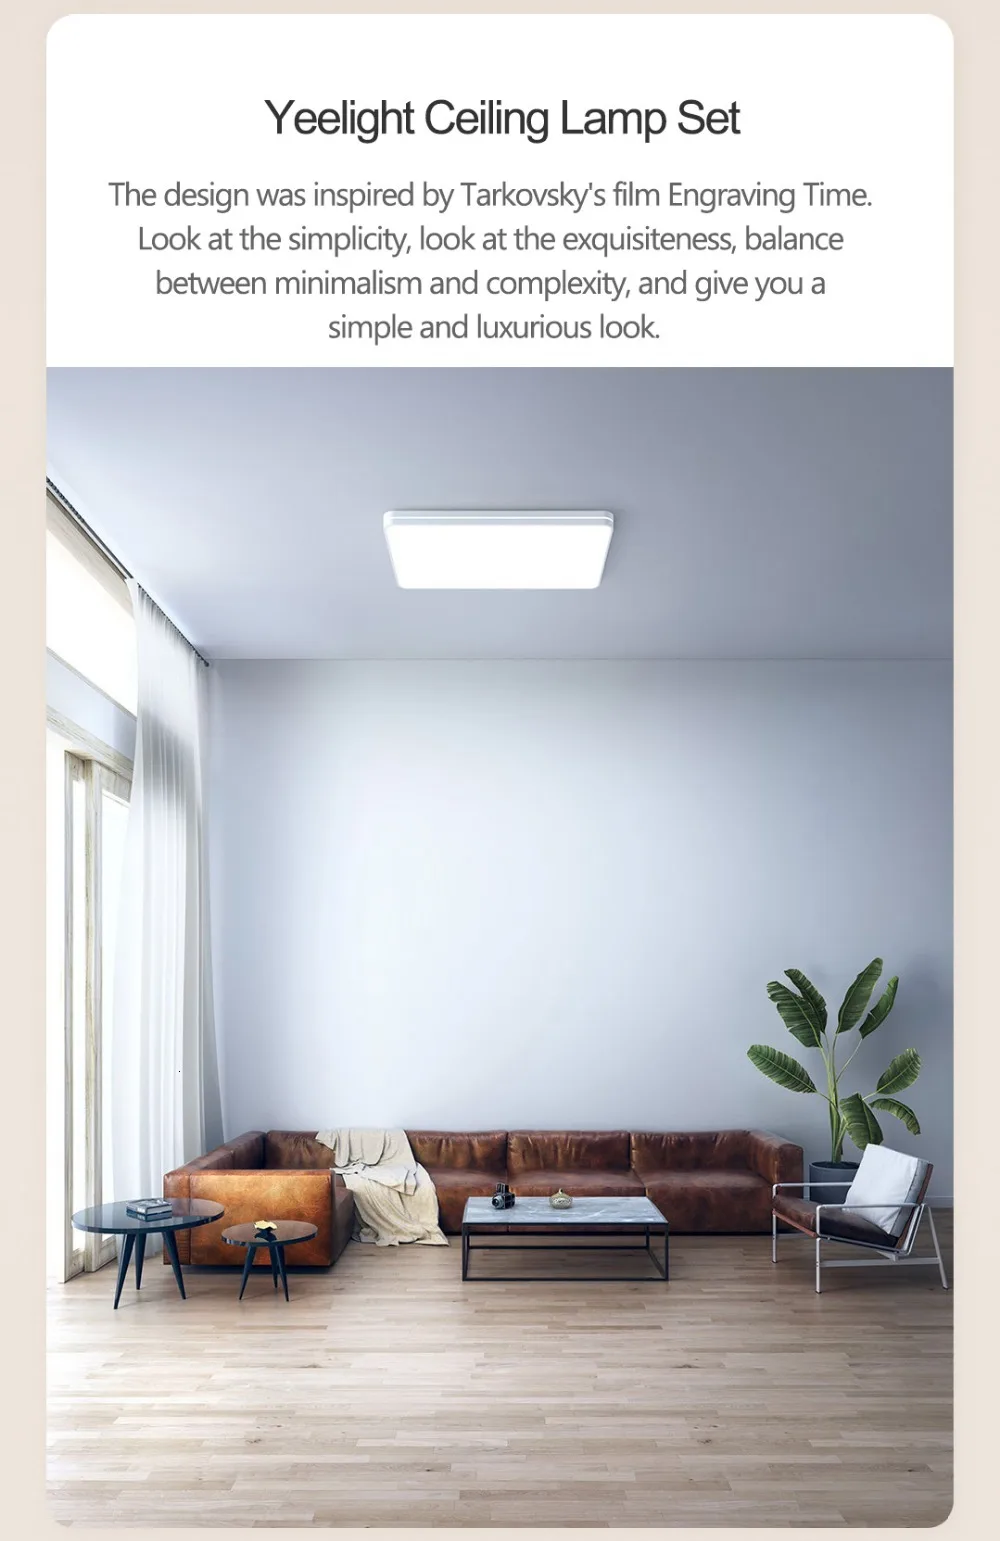 Новейший Xiaomi Yeelight умный светодиодный потолочный светильник s для гостиной Bluetooth светодиодный потолочный светильник Mijia APP пульт дистанционного управления